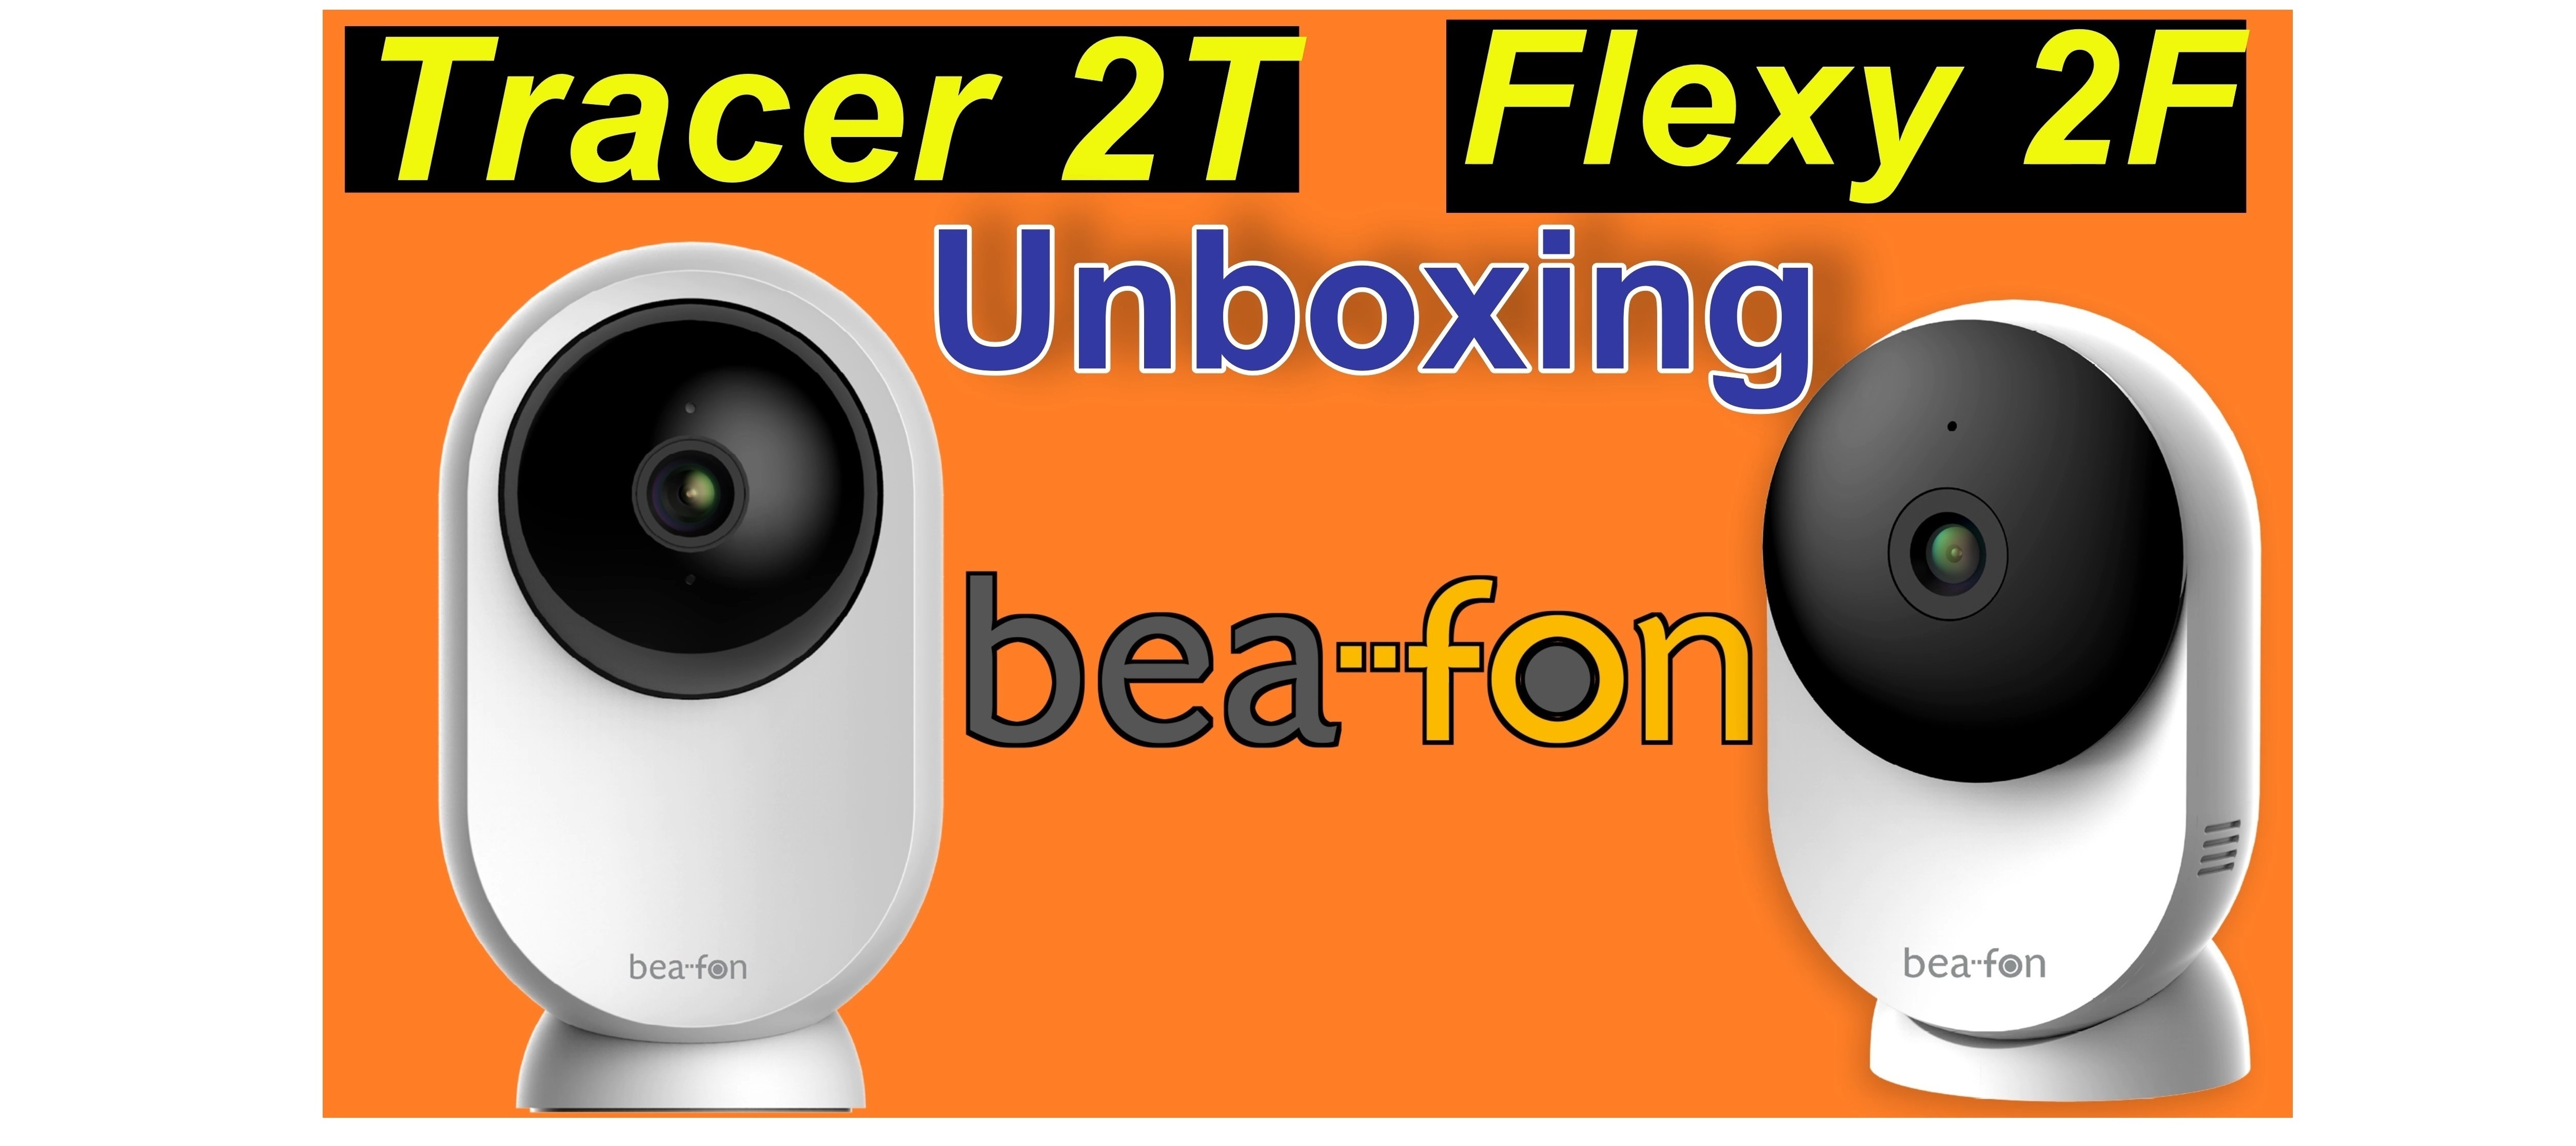 Bea-Fon Flexy 2F + Tracer 2T - auspacken und Ersteindruck | SeppelPower